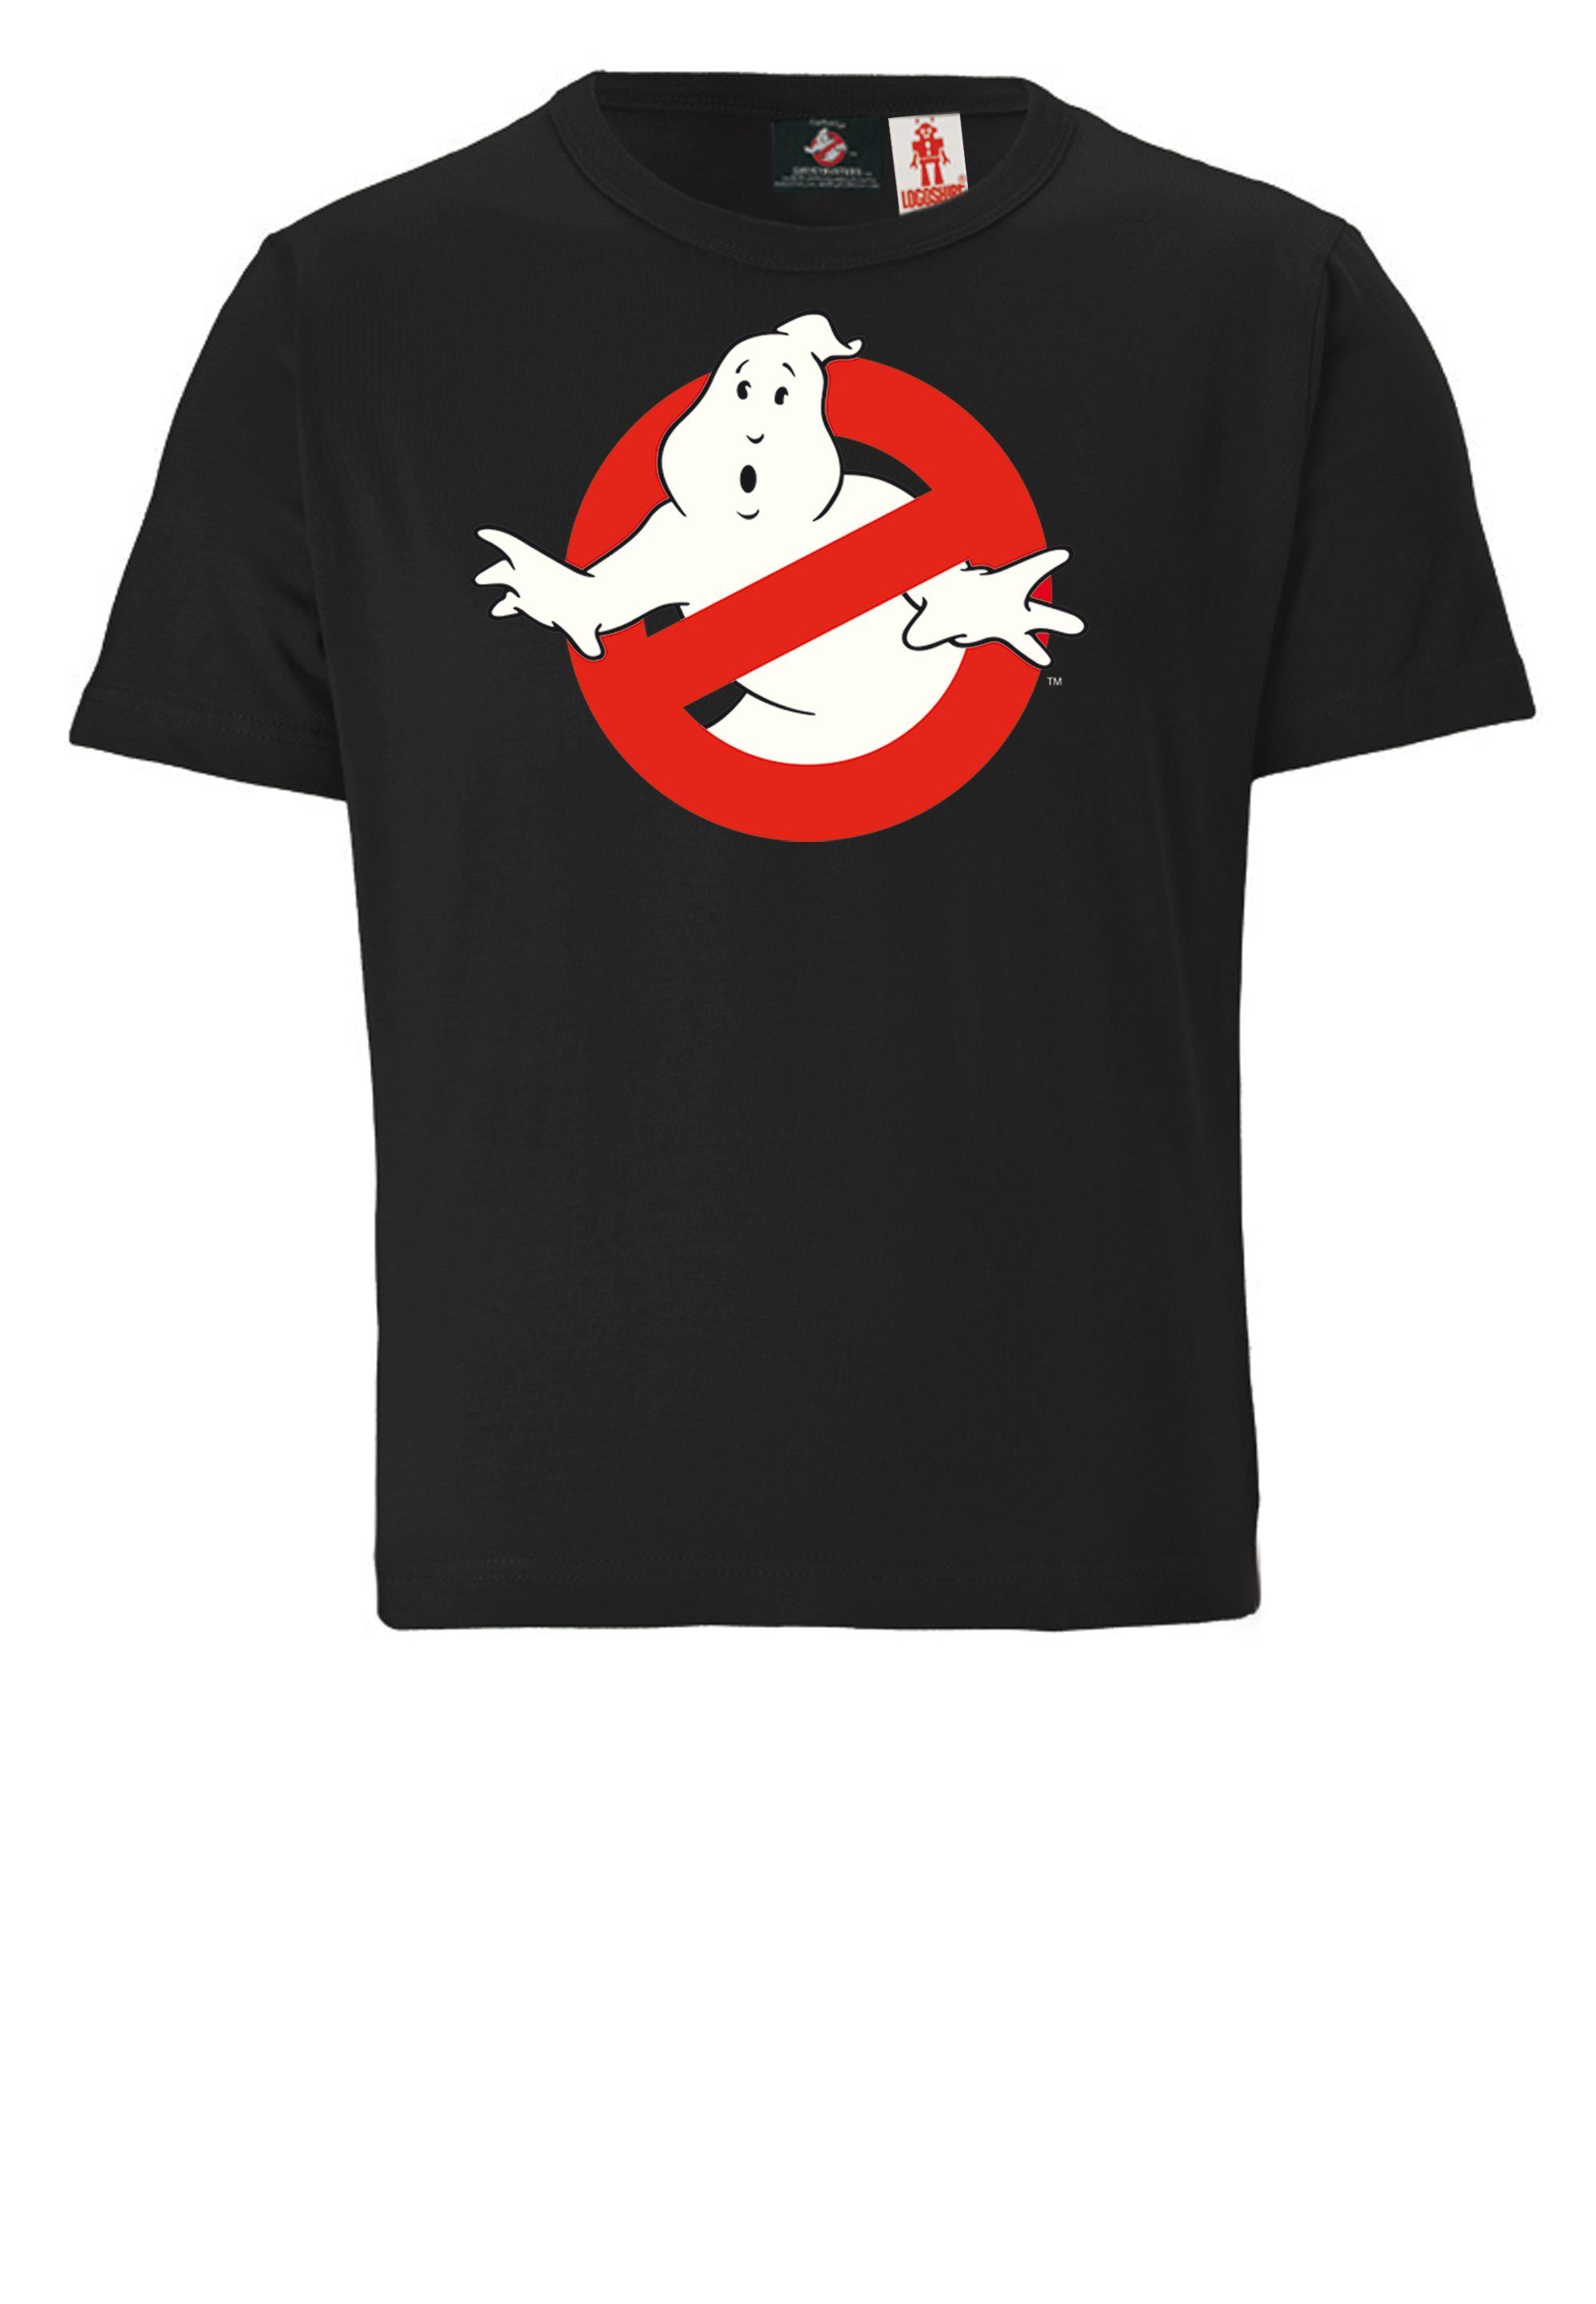 LOGOSHIRT T-Shirt Ghostbusters Design lizenziertem mit